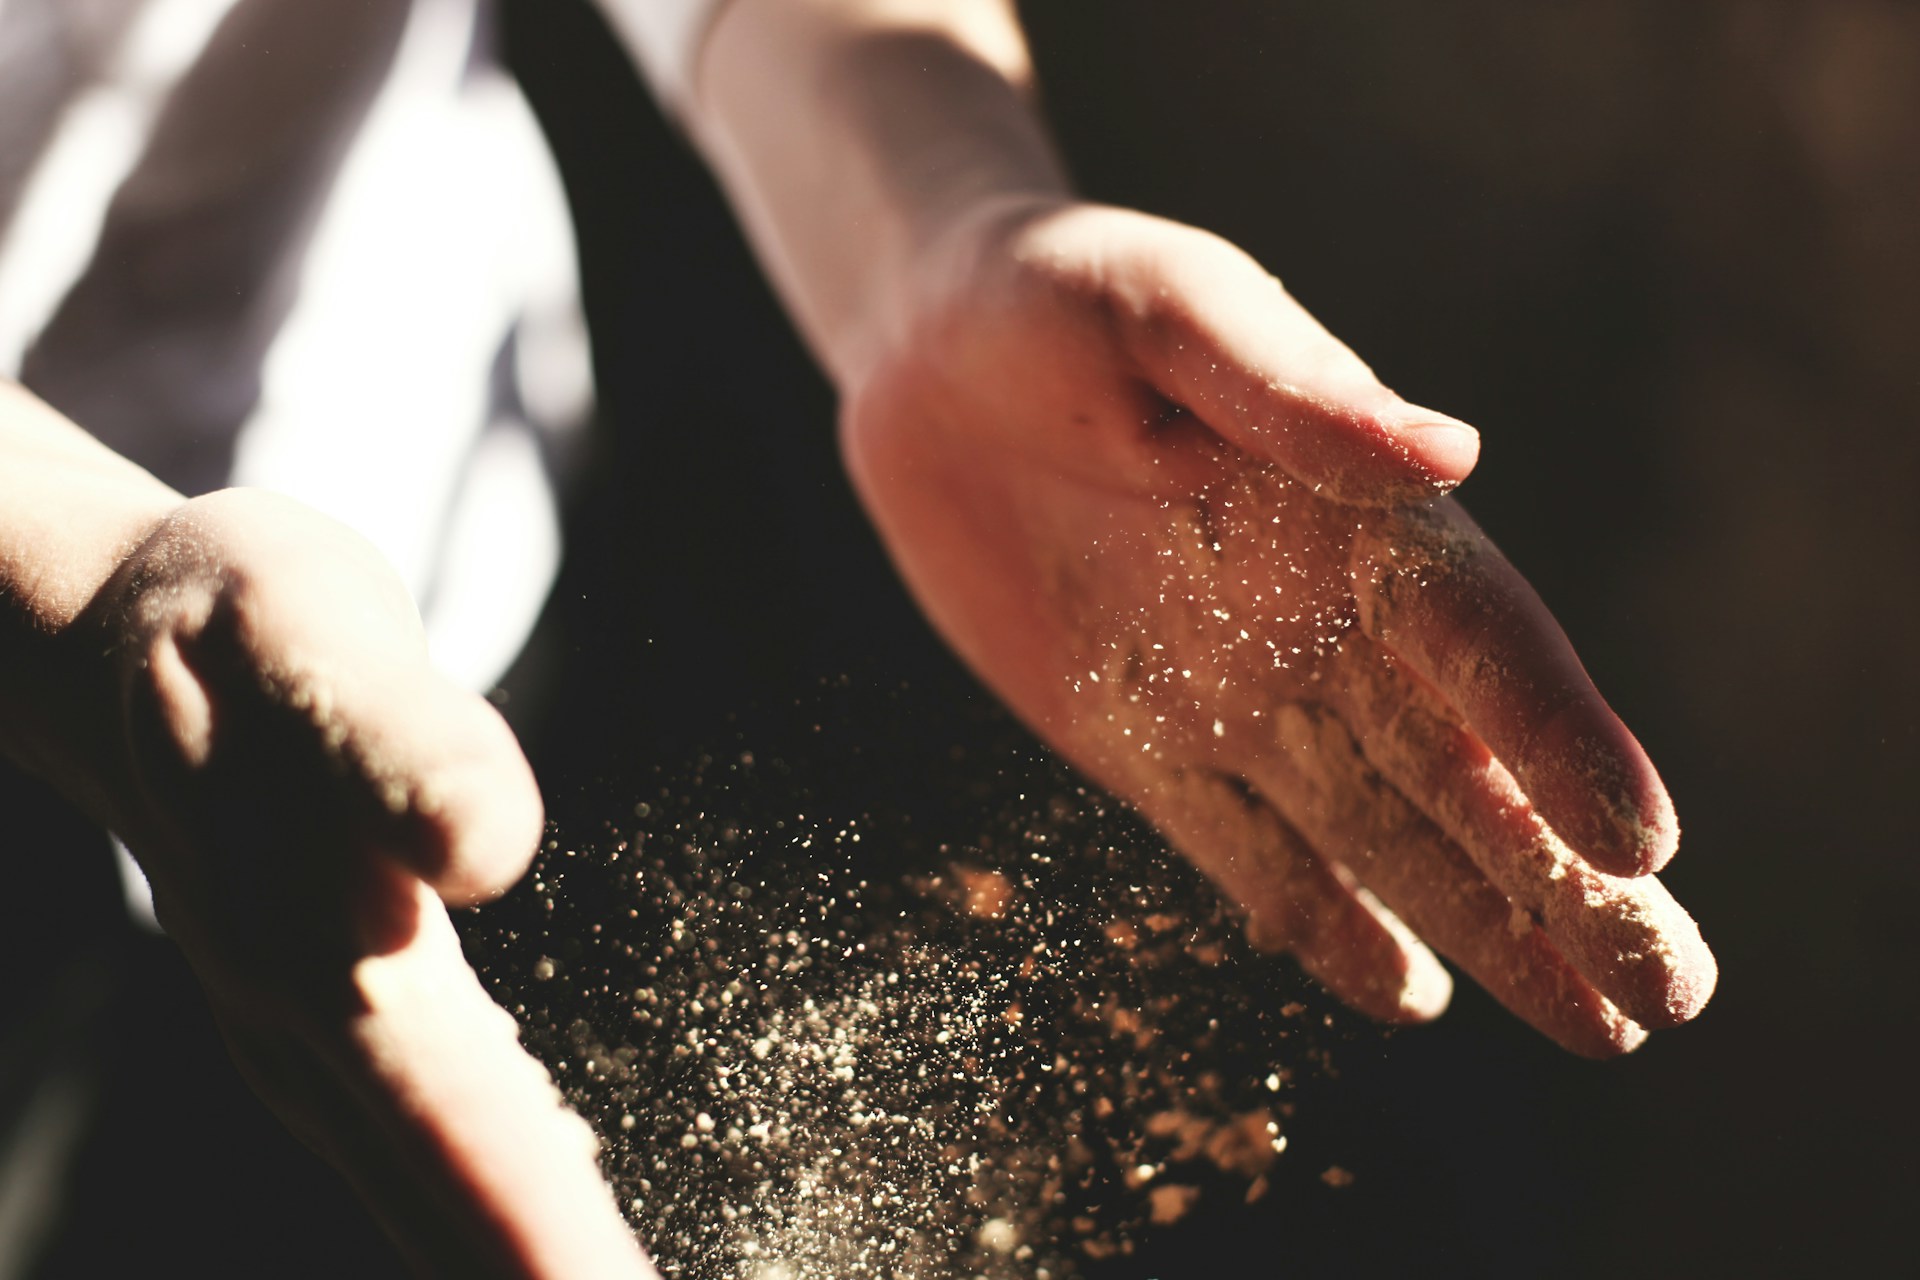 Deux mains pleines de farine qui vole dans l'air, tout en pétrissant de la farine et du levain pour faire du pain - Photo de Austin Ban sur https://unsplash.com/fr/photos/main-dune-personne-avec-de-la-poussiere-pendant-la-journee-IS6RwpuEJpY